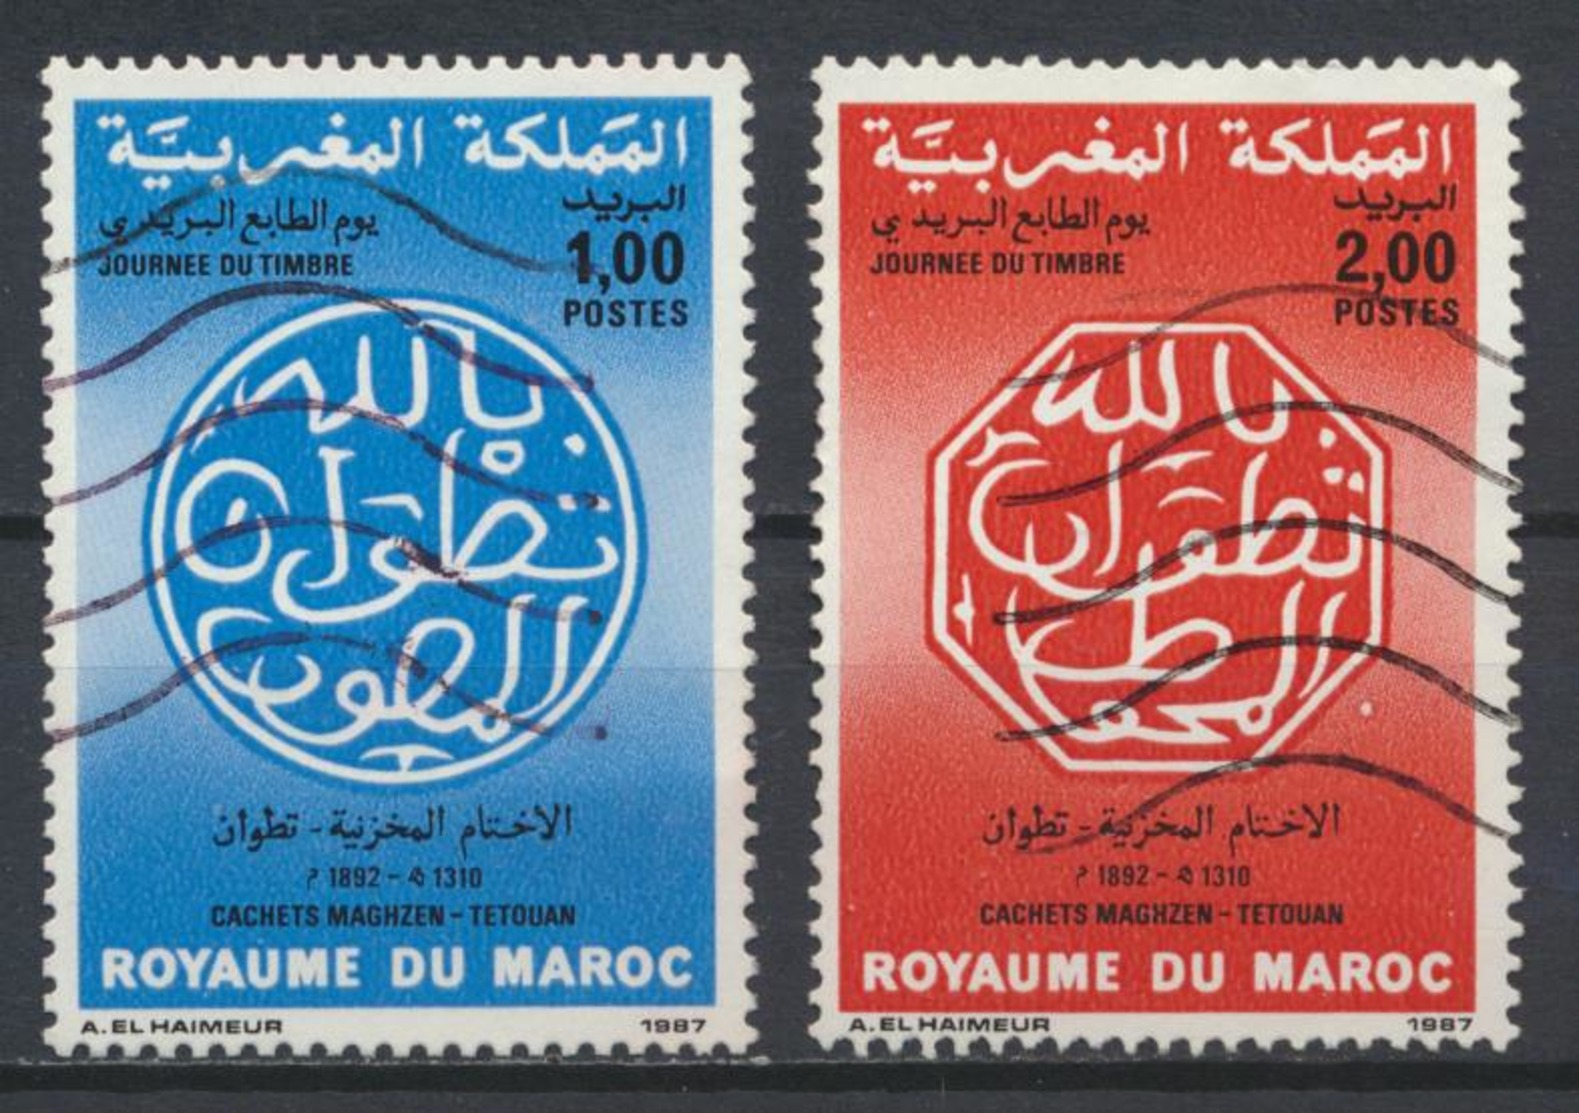 °°° MAROC - Y&T N°1018/19 - 1987 °°° - Marocco (1956-...)